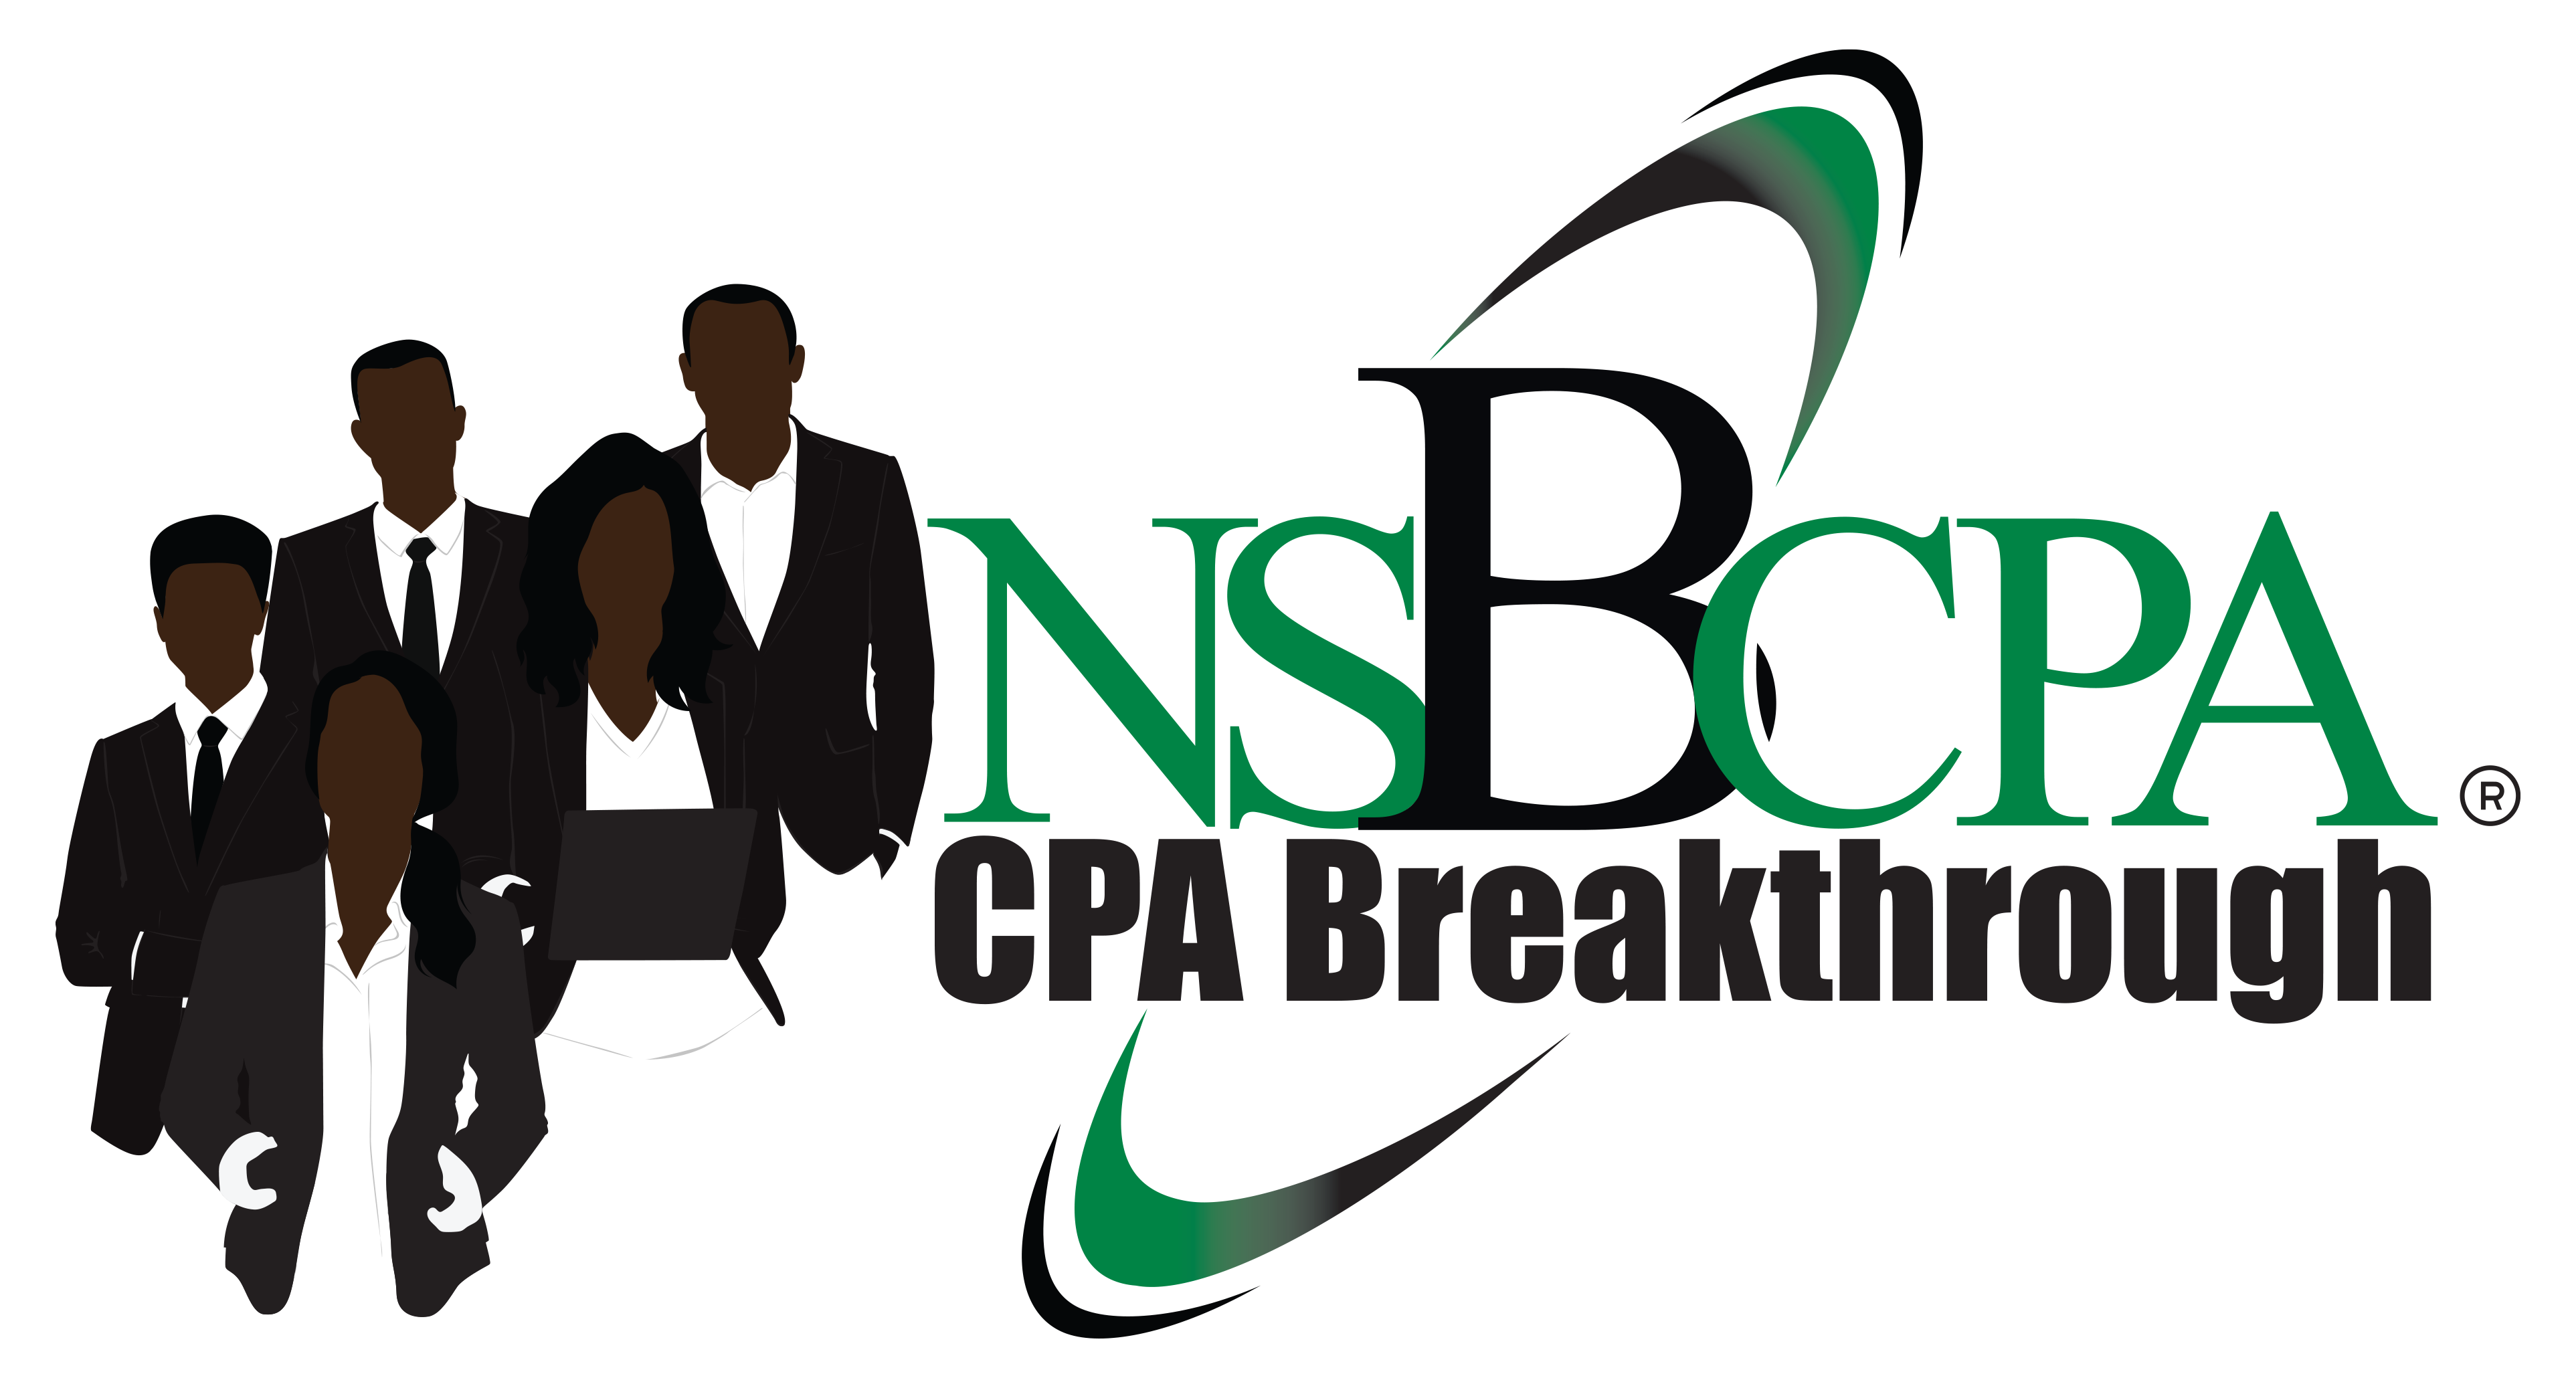 CPA Breakthrough Logo (R)